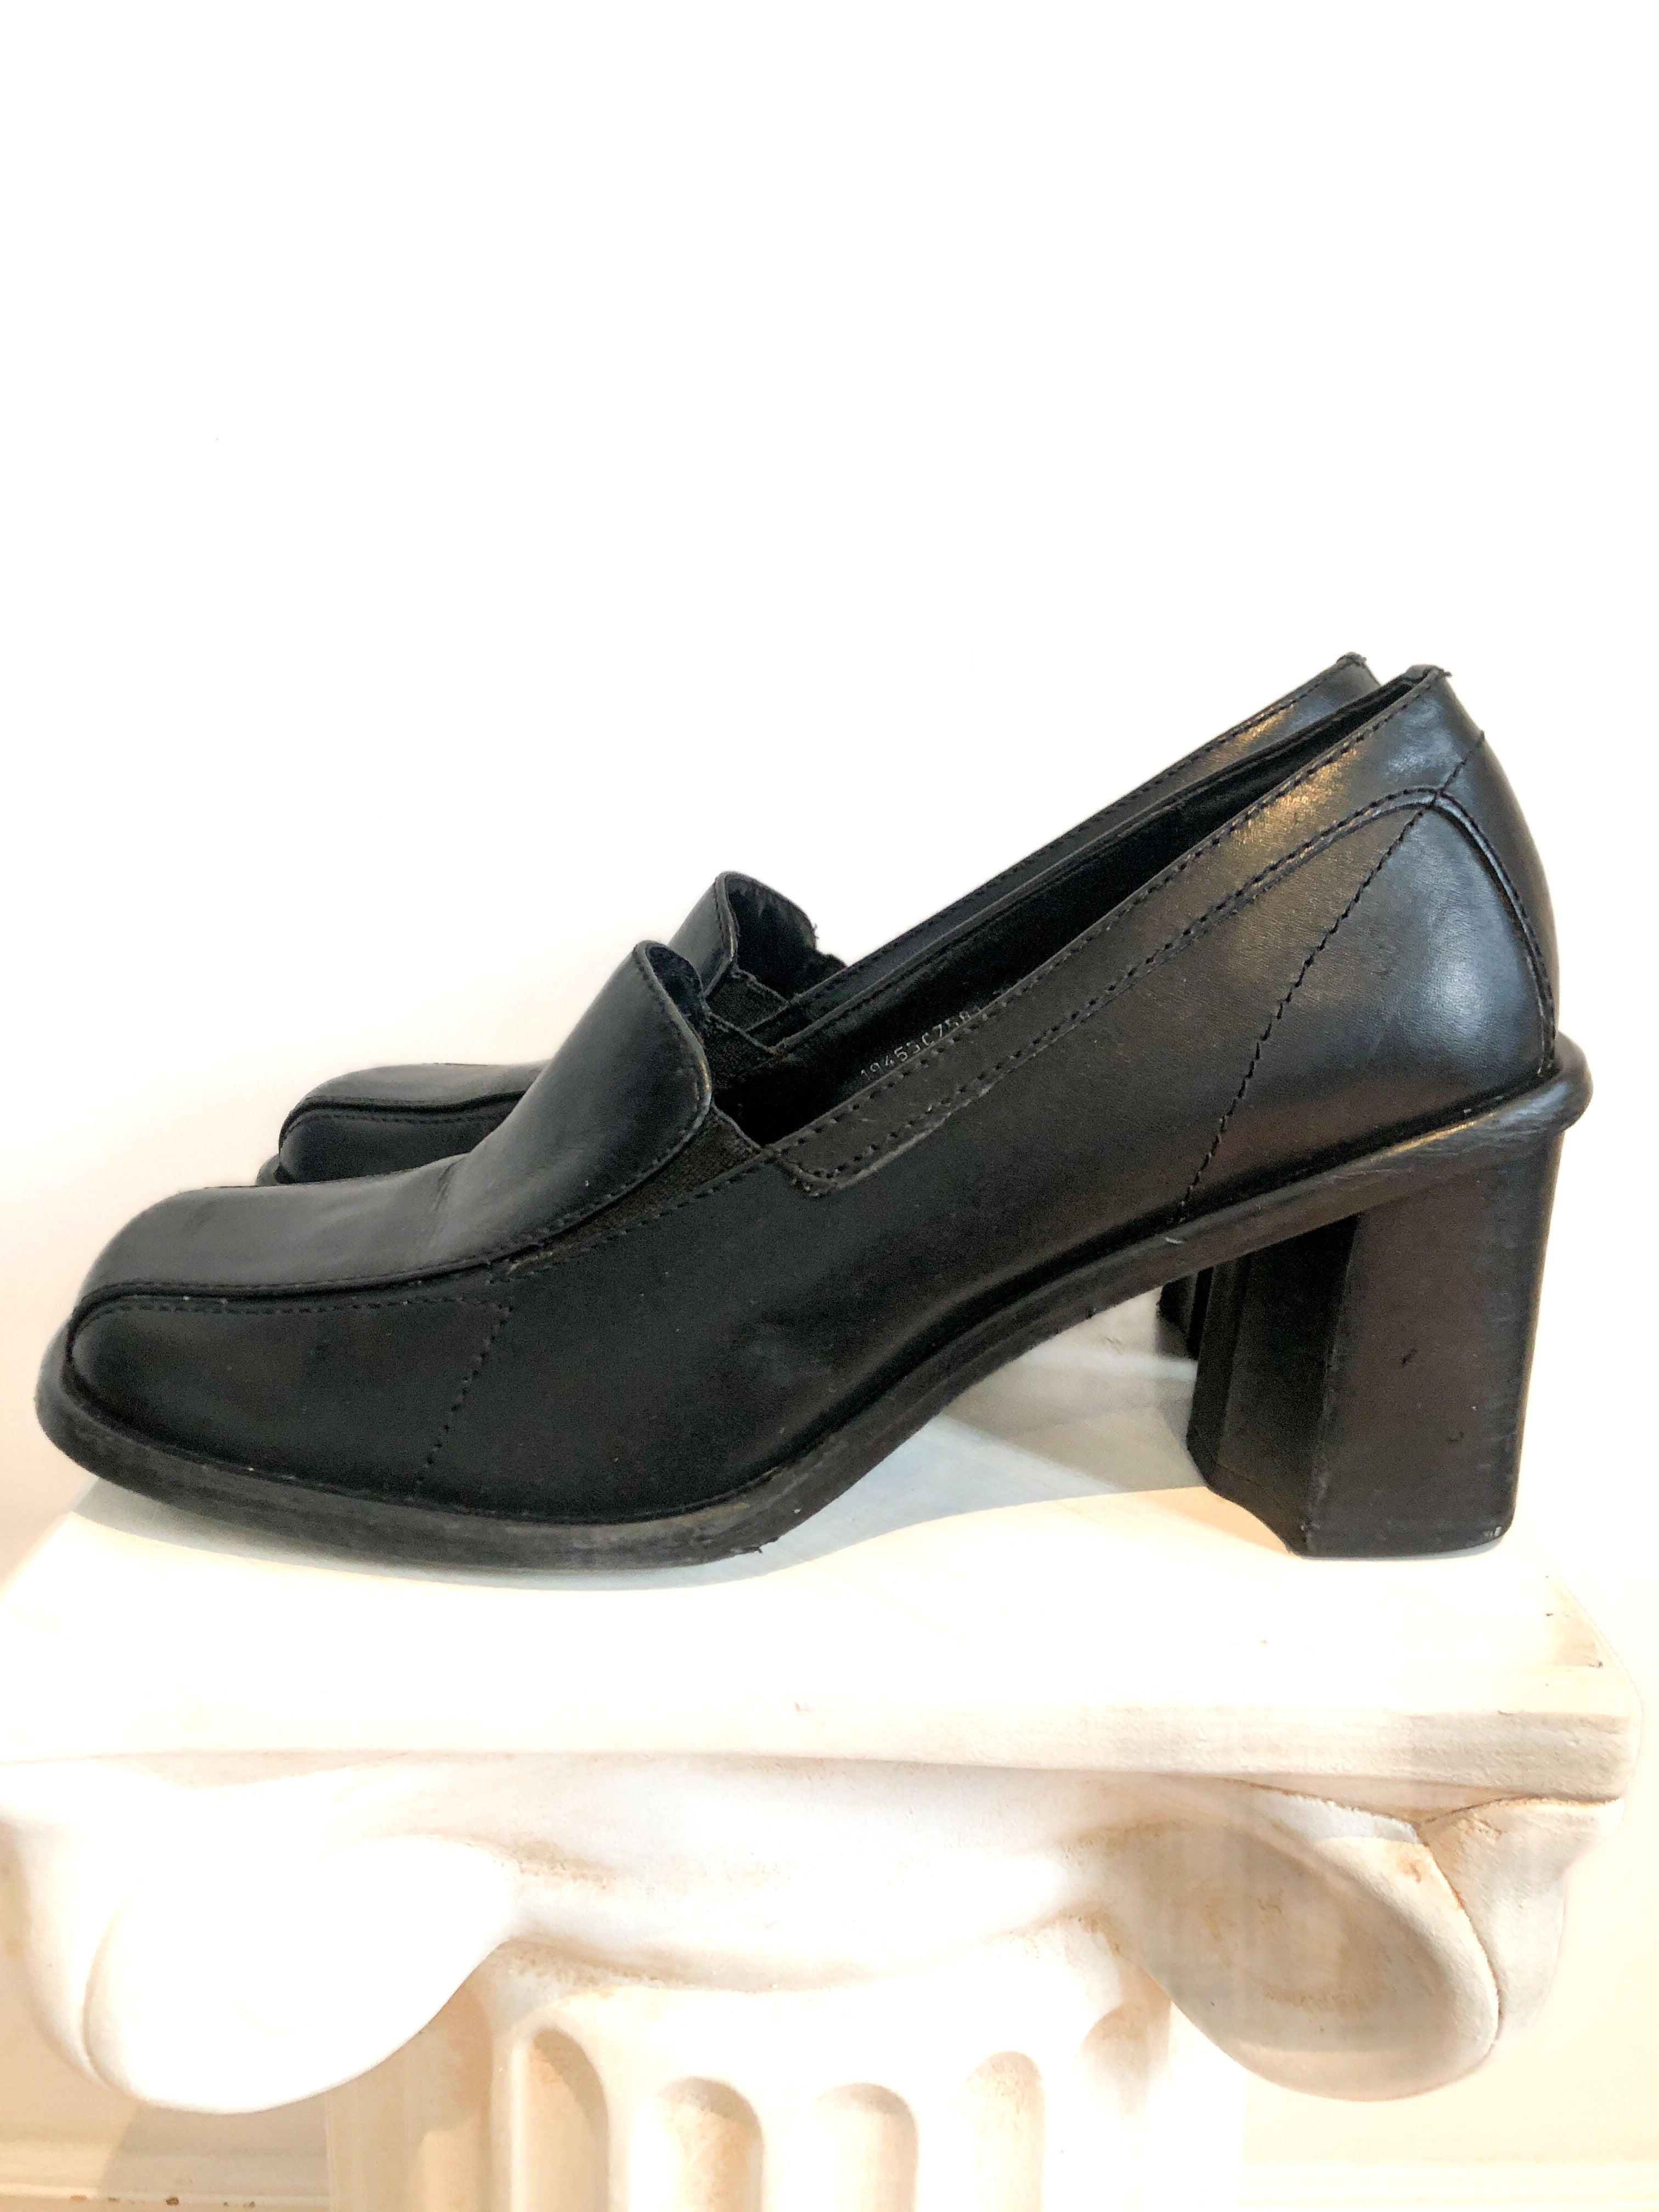 Black Leather Loafer Chunky Heel Shoe, US Size 7 Women's, 1990s Vintag –  Covet Vintage